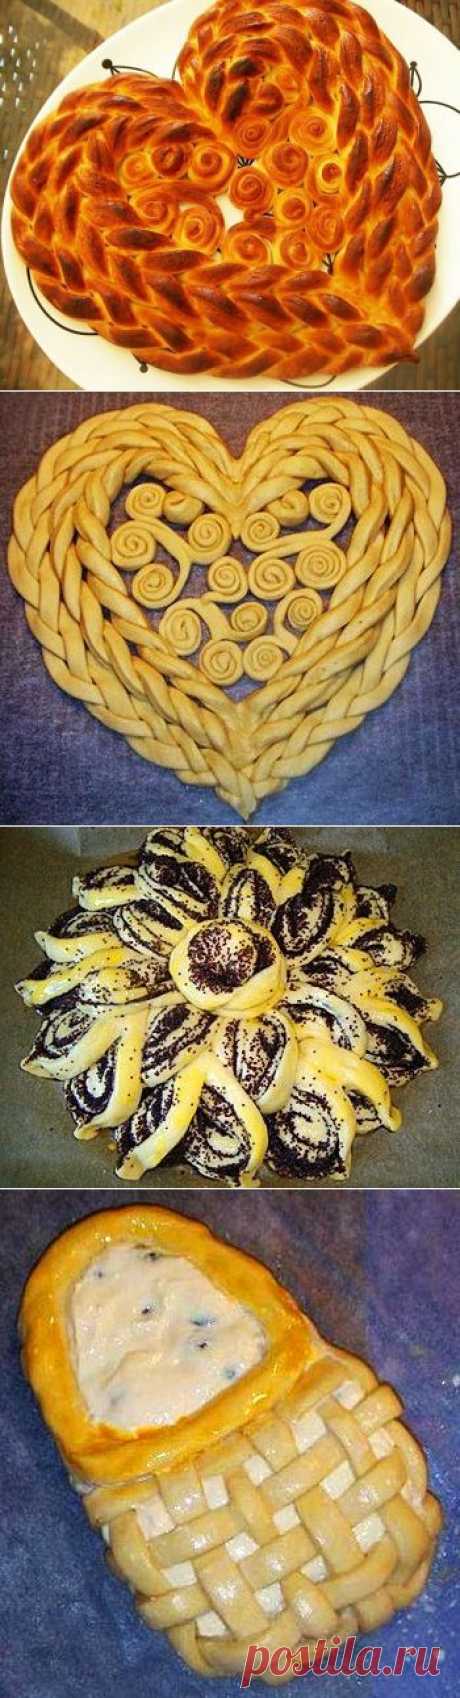 Как красиво разделать тесто: пироги, пирожки, булочки и плетёнки | Самоделкино